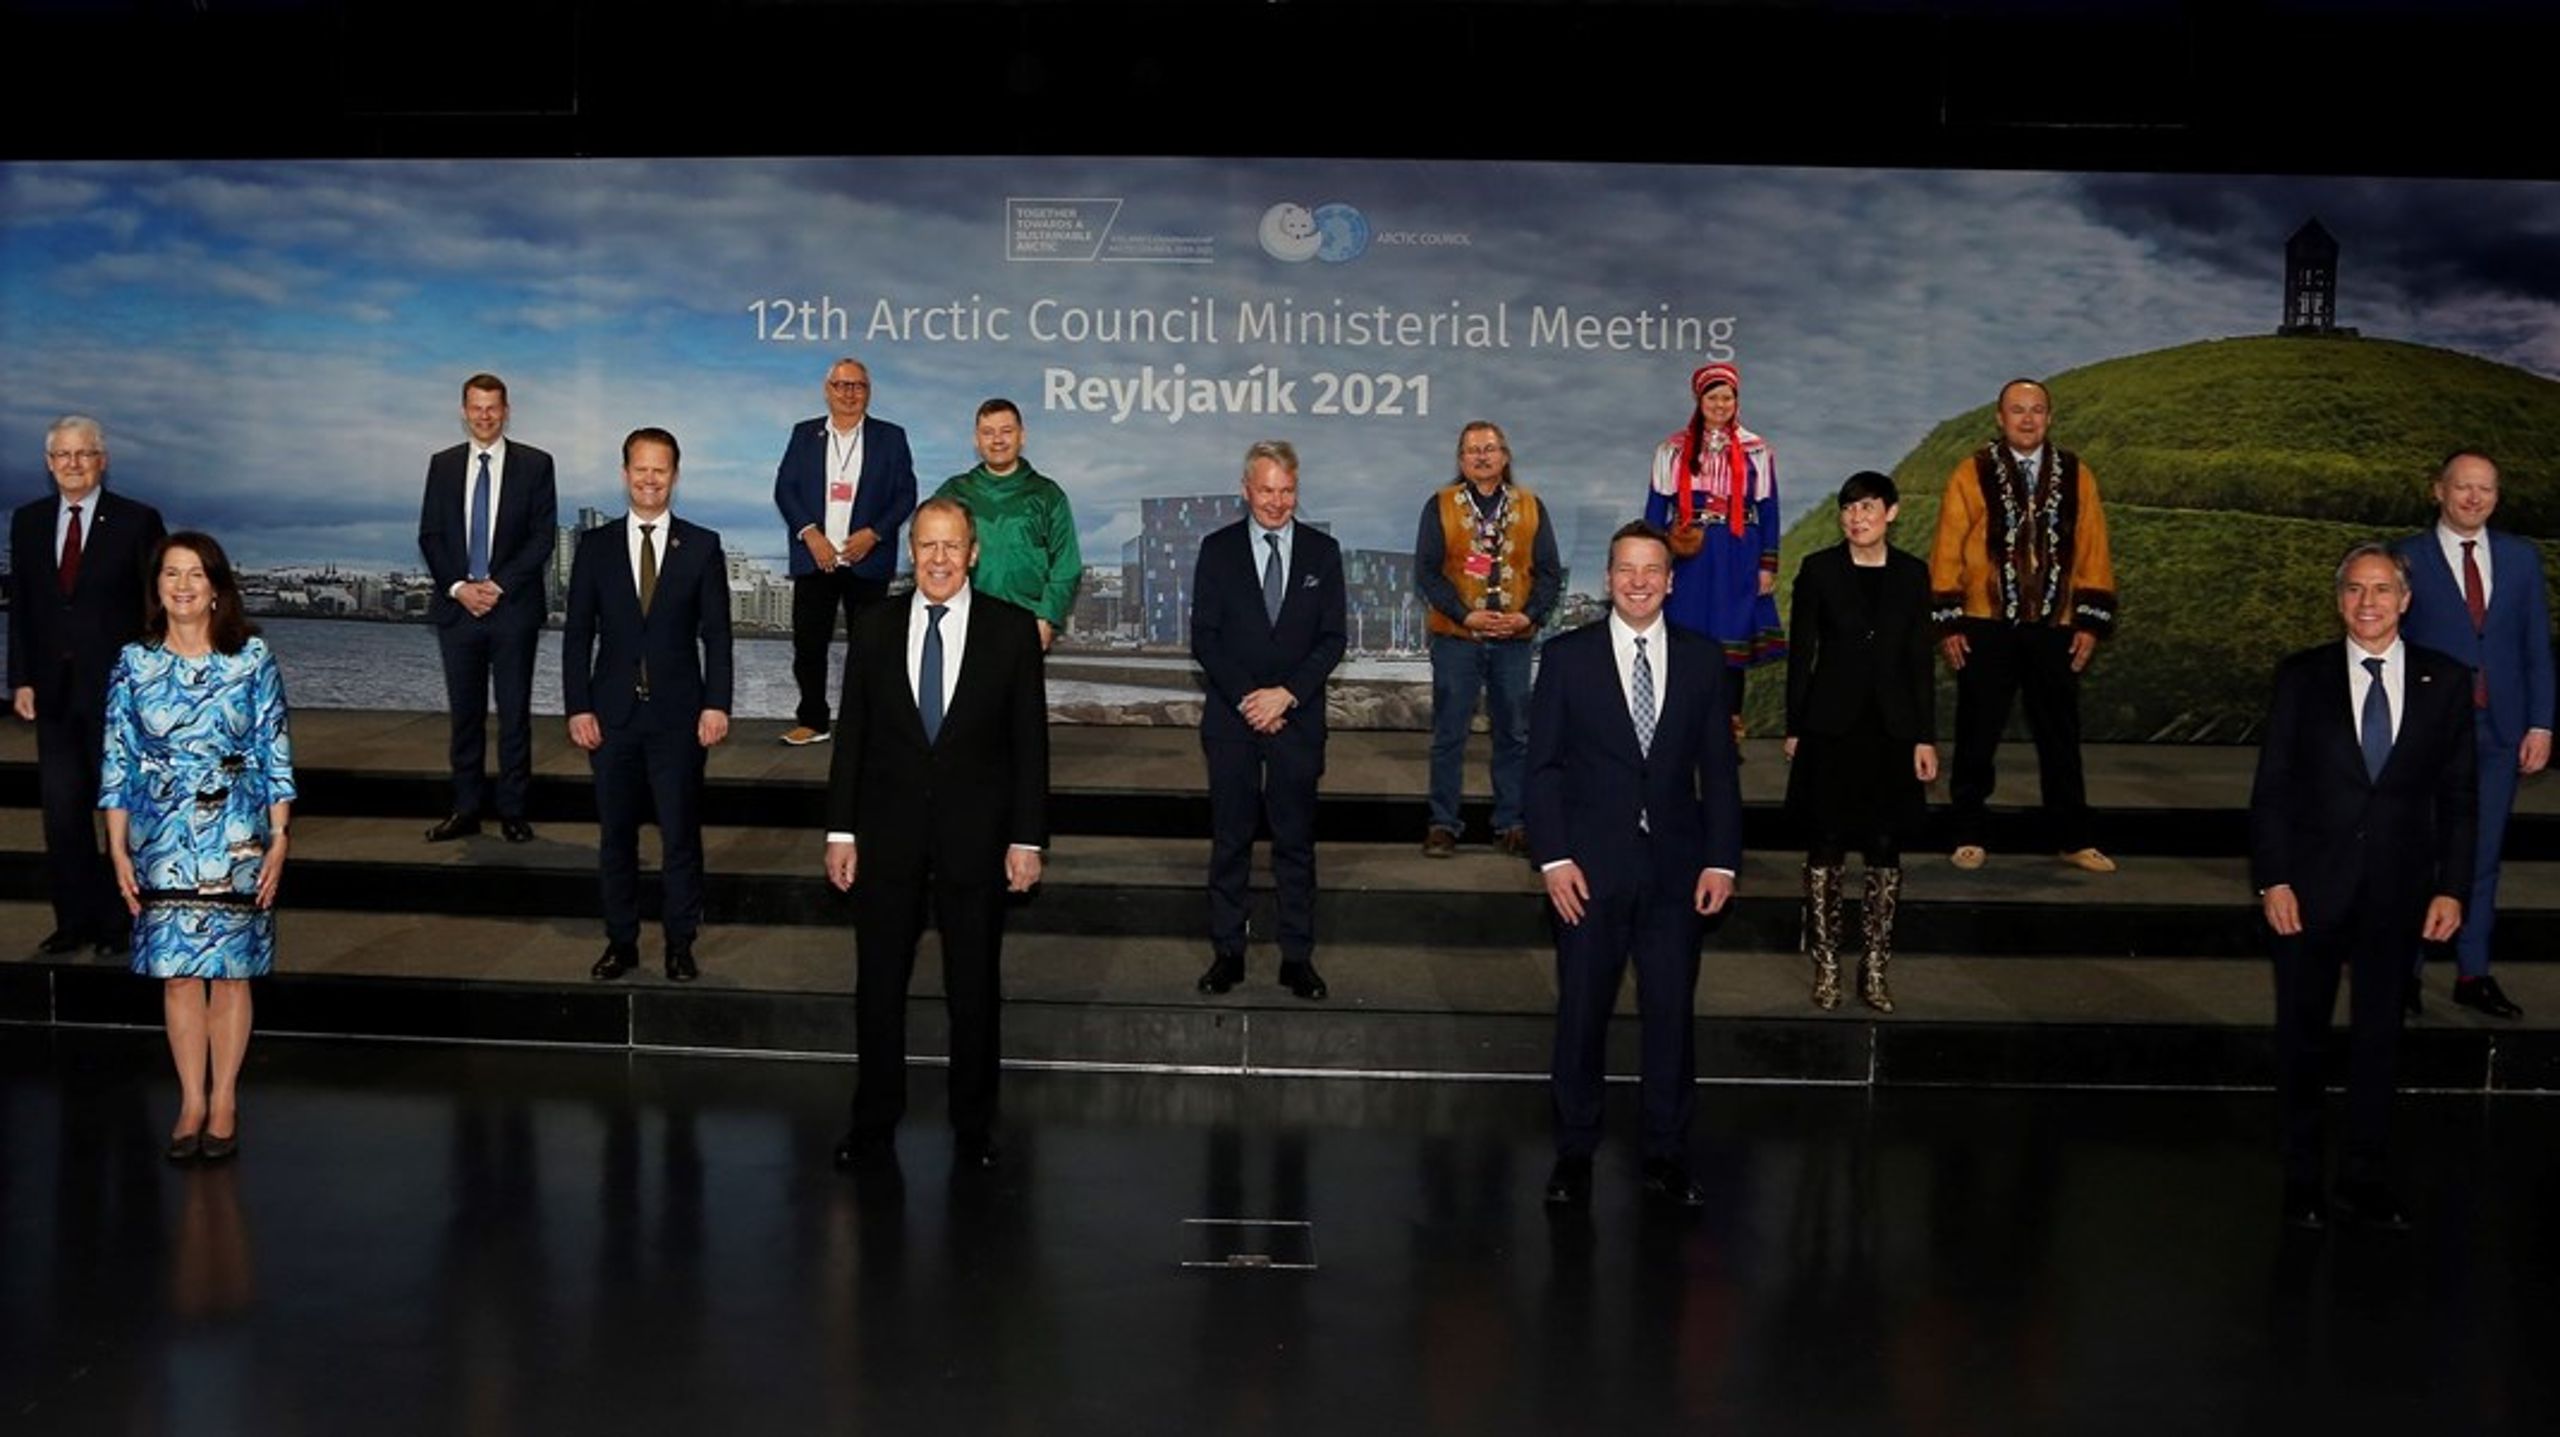 De otte arktiske nationers udenrigsministre samlet til topmøde i Reykjavik i Island i maj 2021, da stemningen i rådet stadig var god. Nummer to fra venstre i forreste række er Ruslands udenrigsminister Sergej Lavrov. Skråt til venstre bag ham Danmarks udenrigsminister Jeppe Kofod.